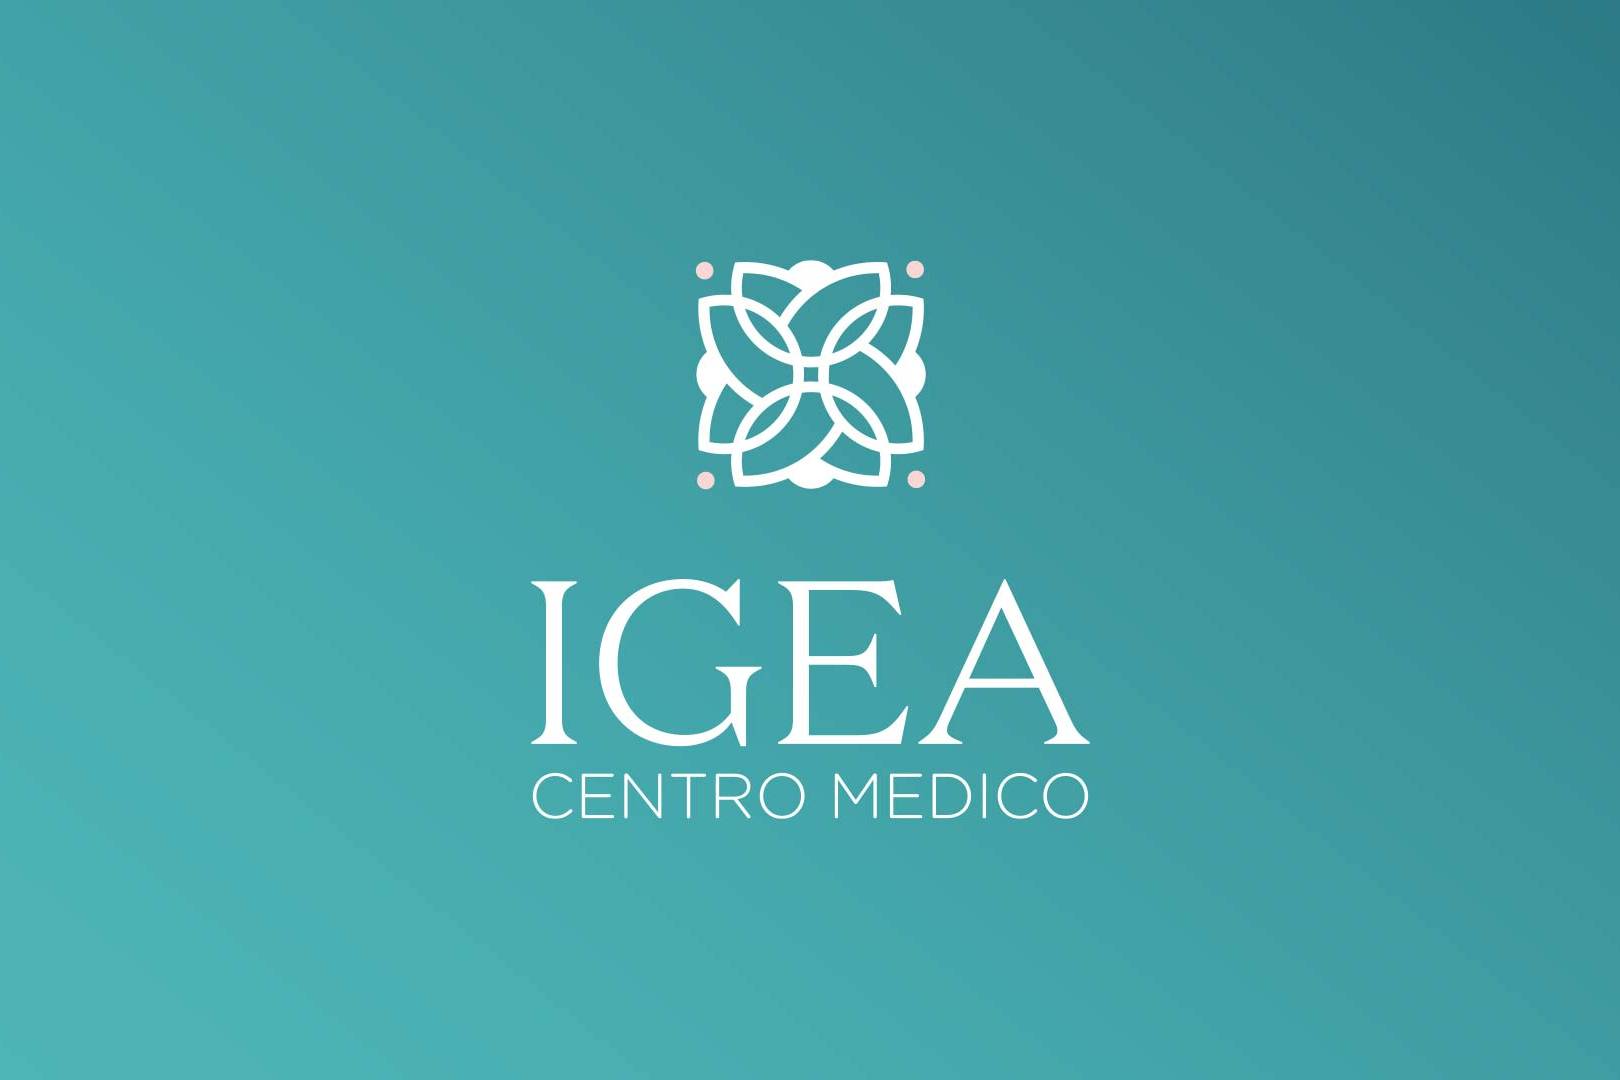 Idea logo